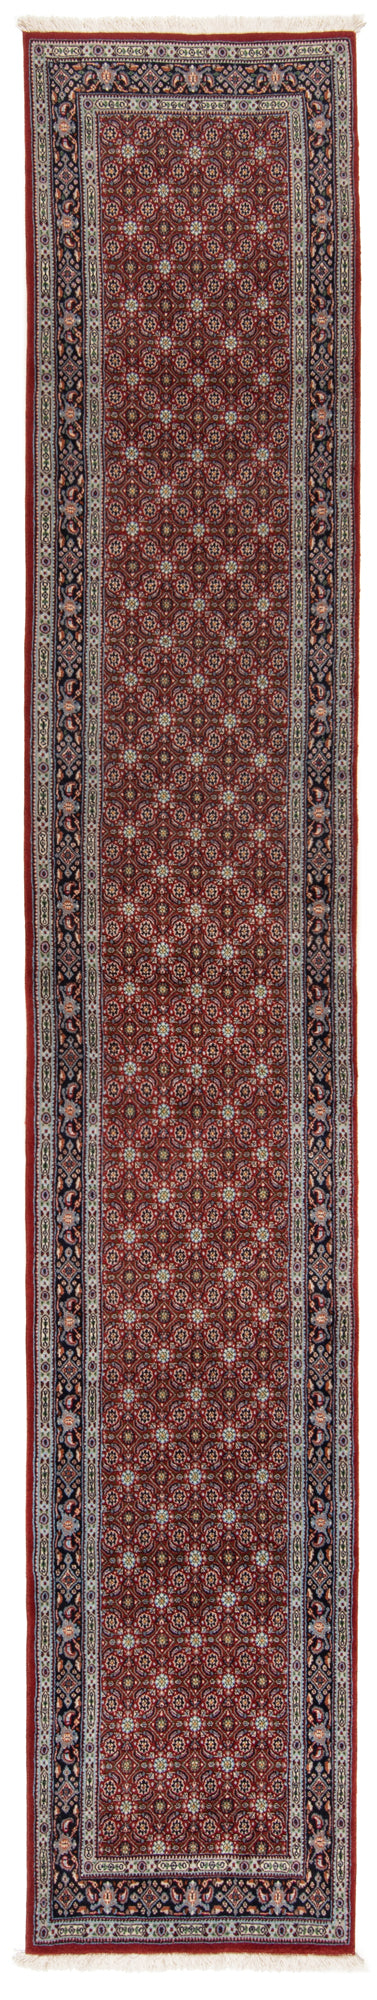 Moud con alfombra persa de seda | 380 x 67 cm